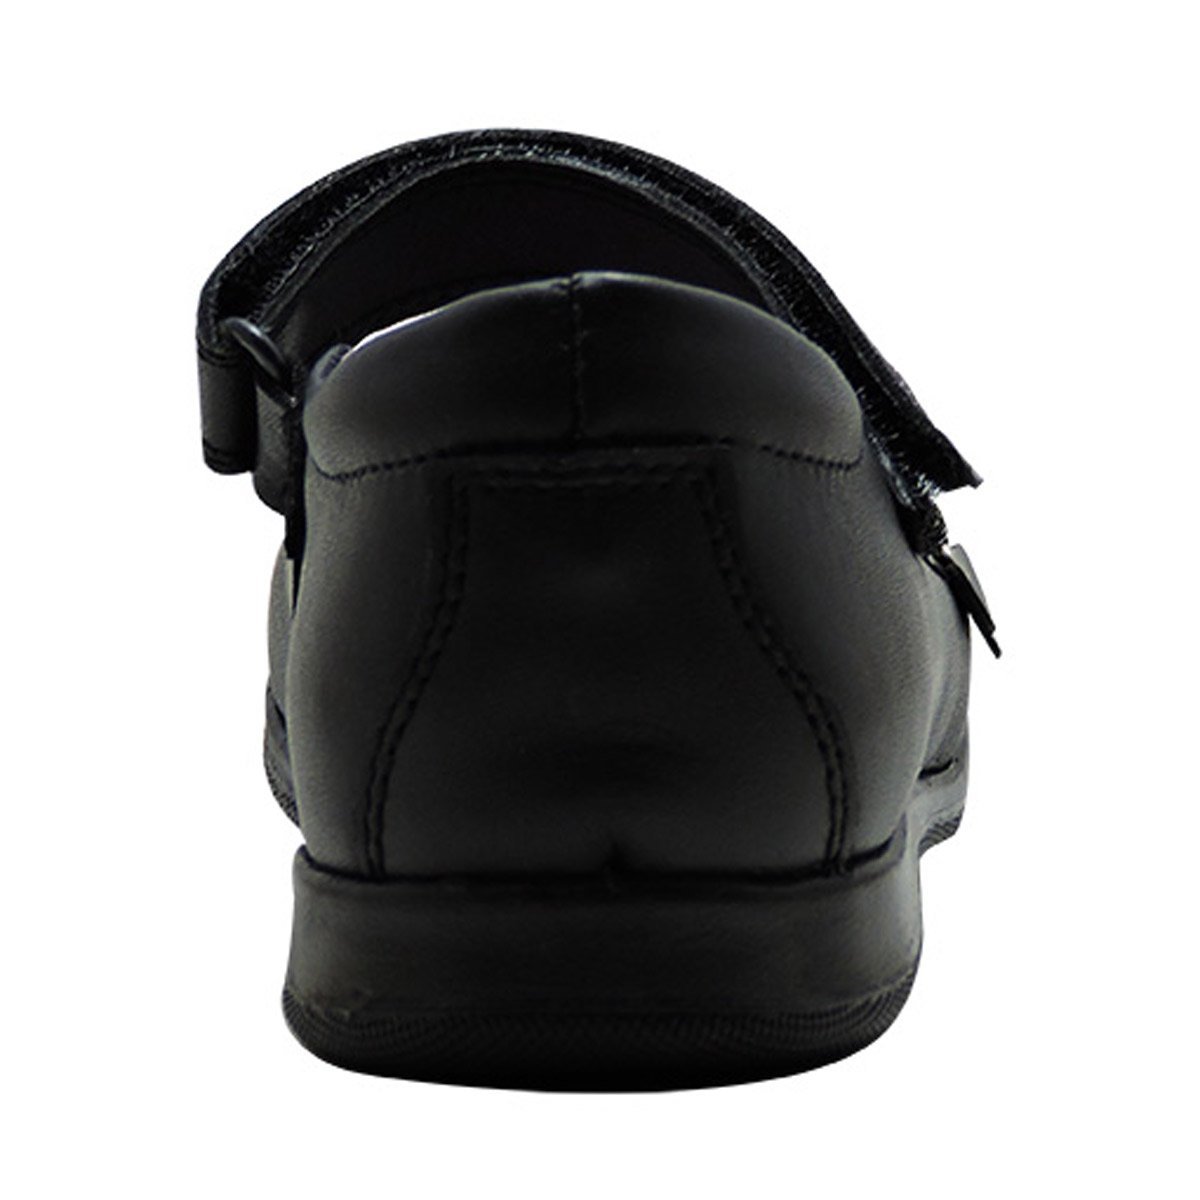 Zapato Escolar Velcro 15-17 Blasito Mod. 5124